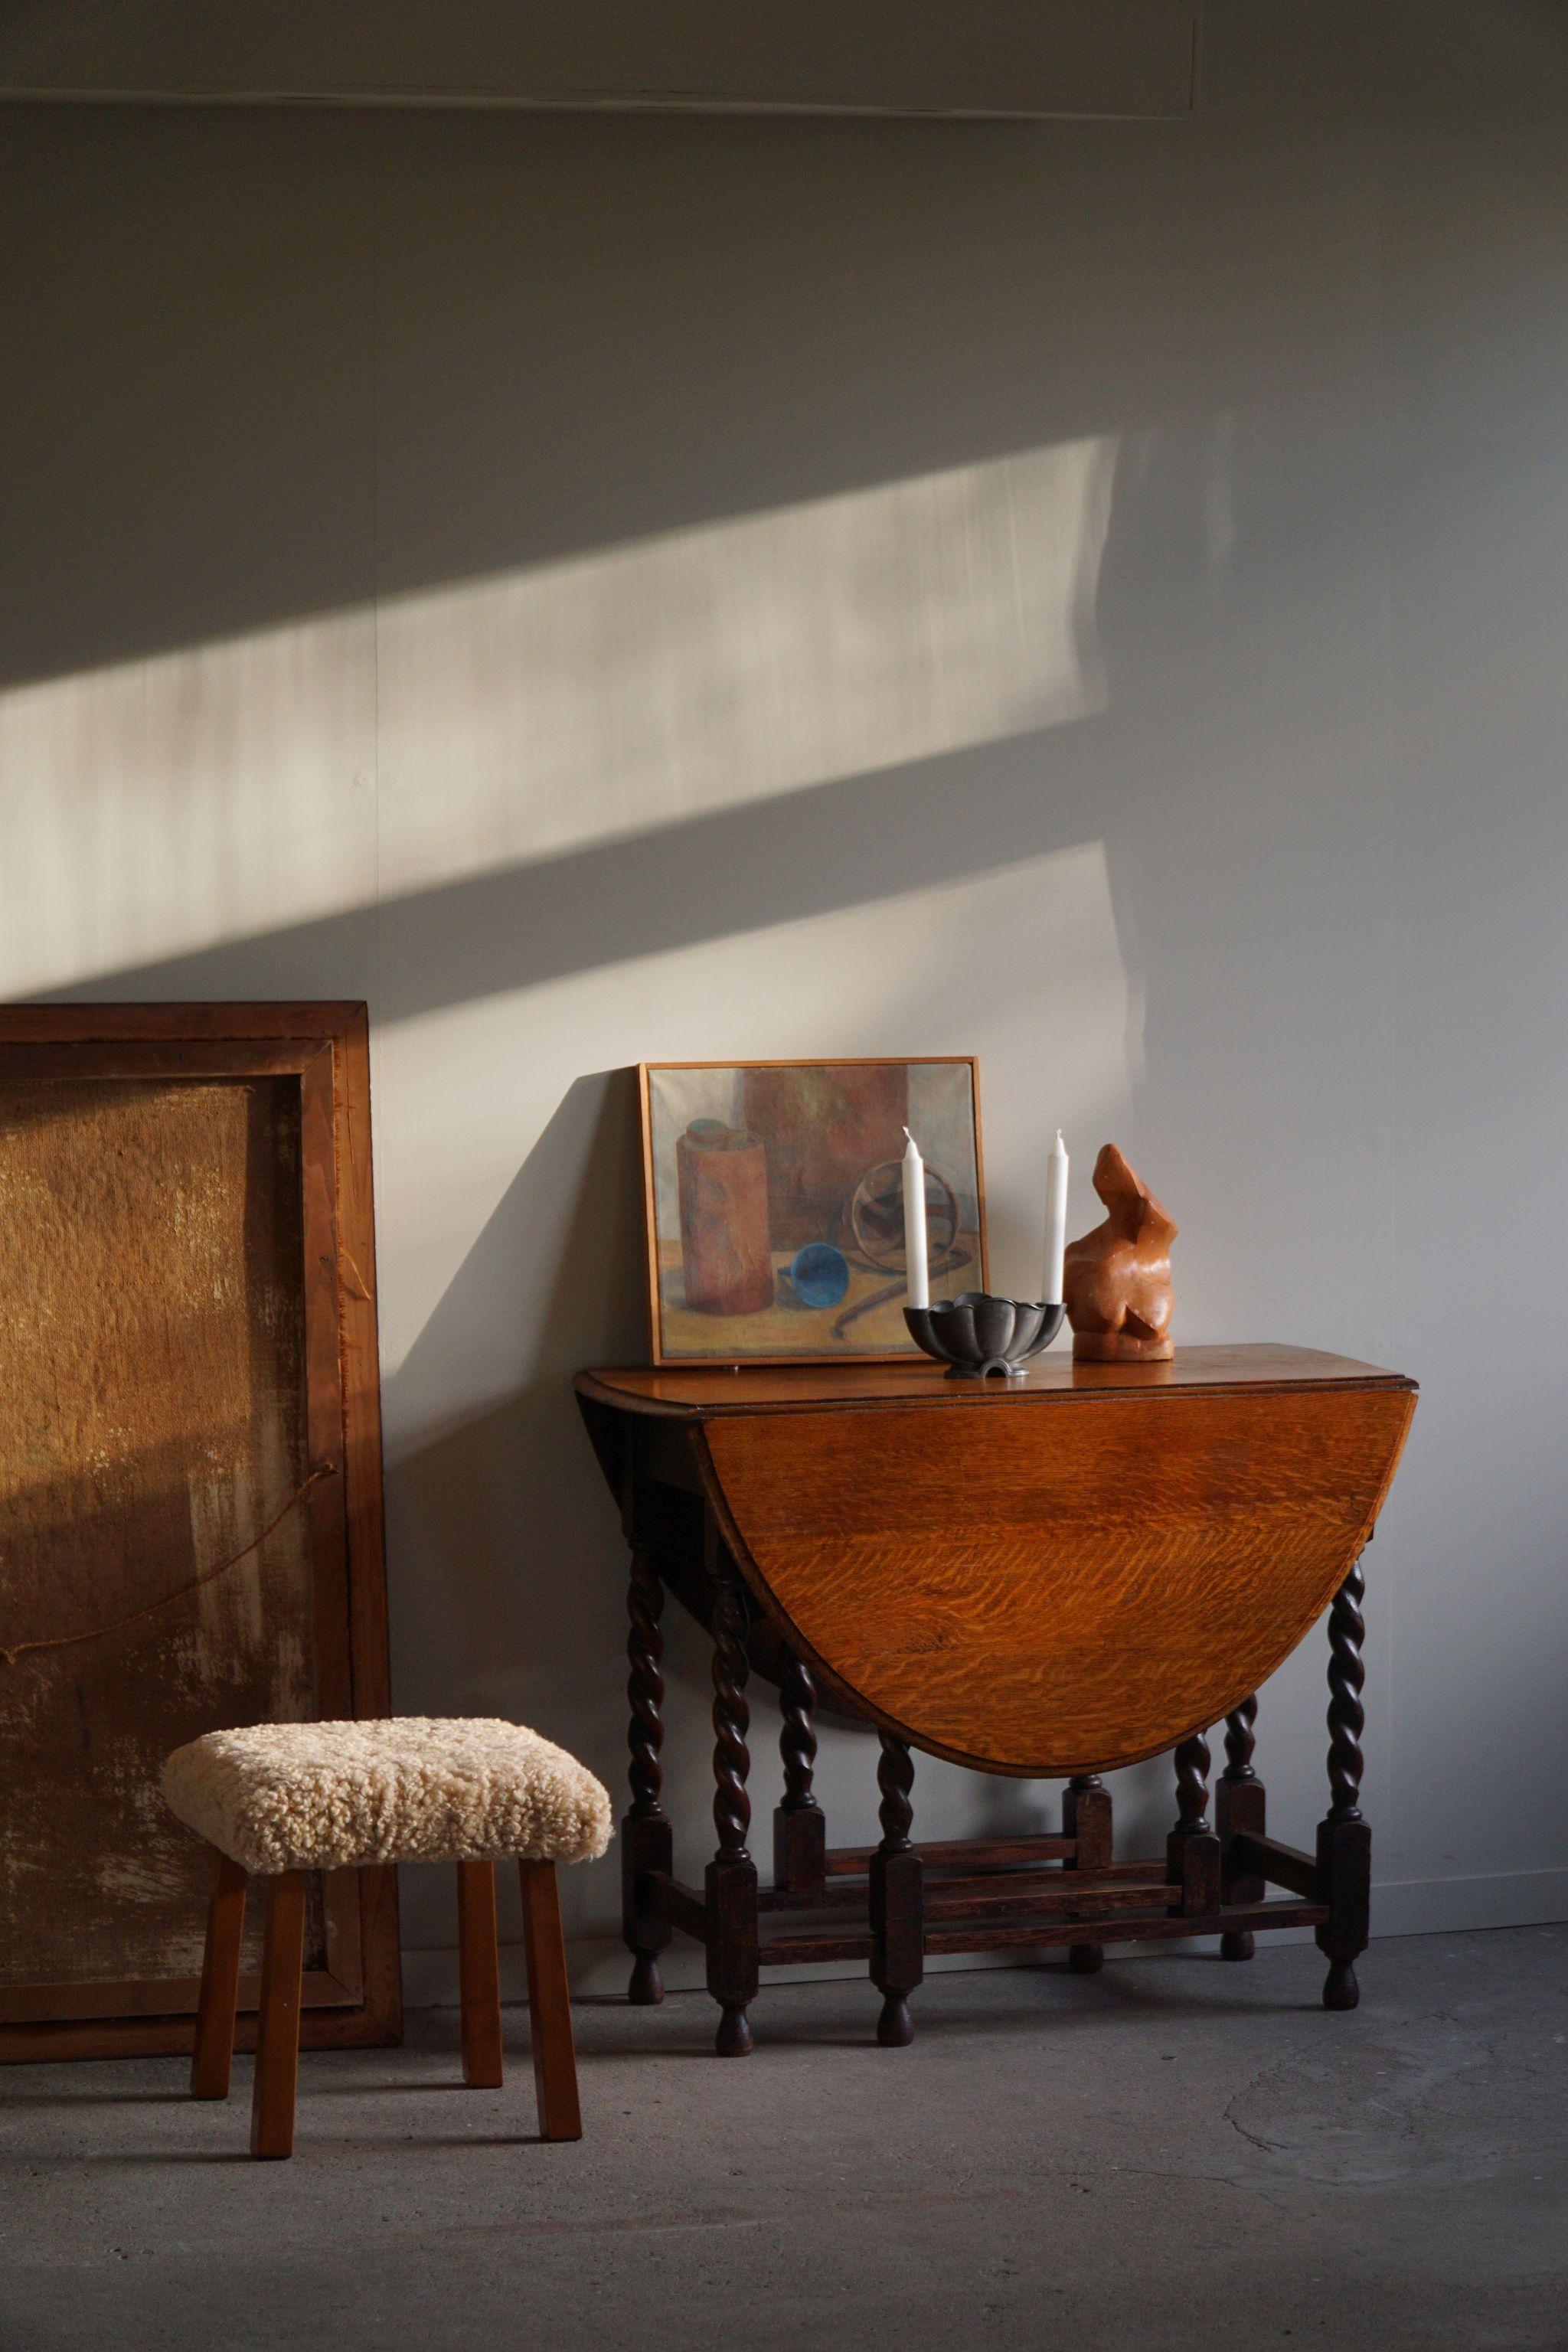 Ein charmanter Hocker aus Massivholz, der Sitz ist mit Lammfell gepolstert. Hergestellt von einem dänischen Möbelschreiner in den 1950er Jahren.

Ein großartiges brutalistisches Objekt, perfekt für die moderne Einrichtung. Eine warme Farbe und